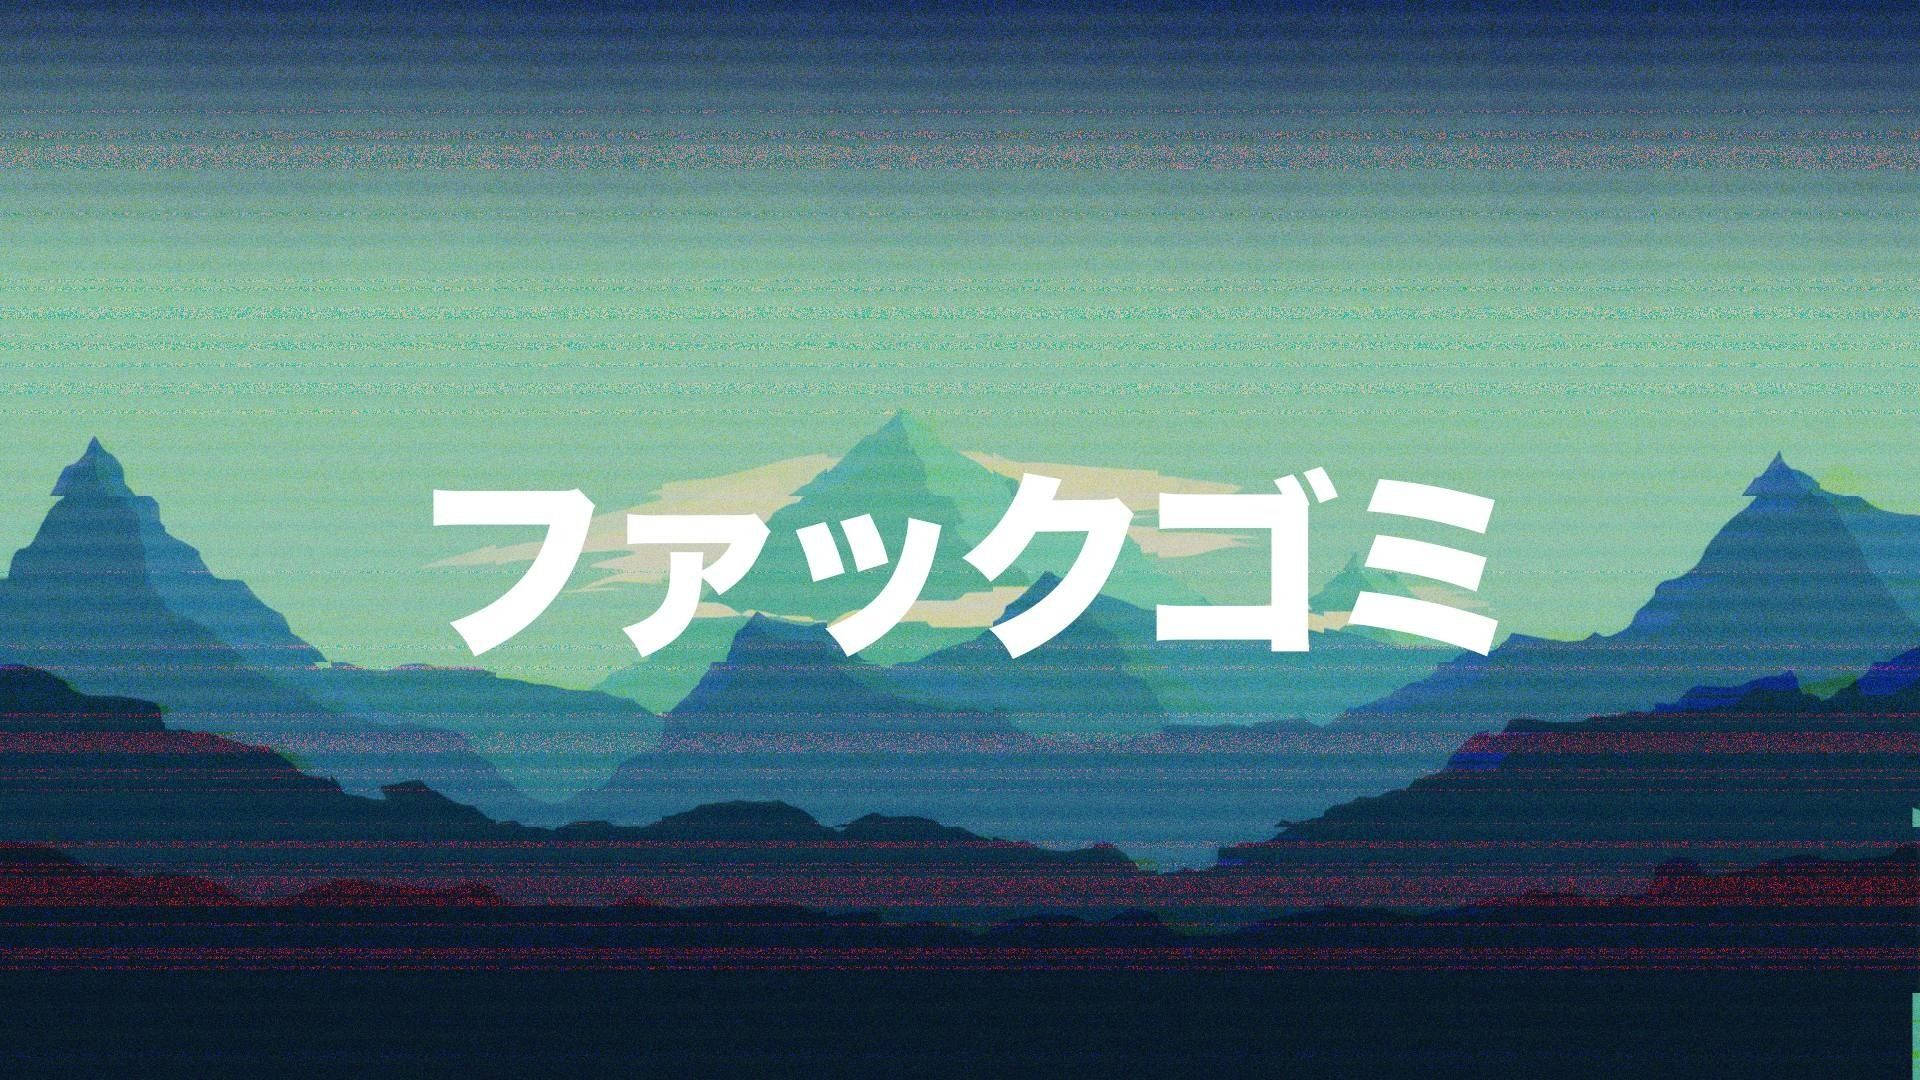 Japanese Katakana In Glitch